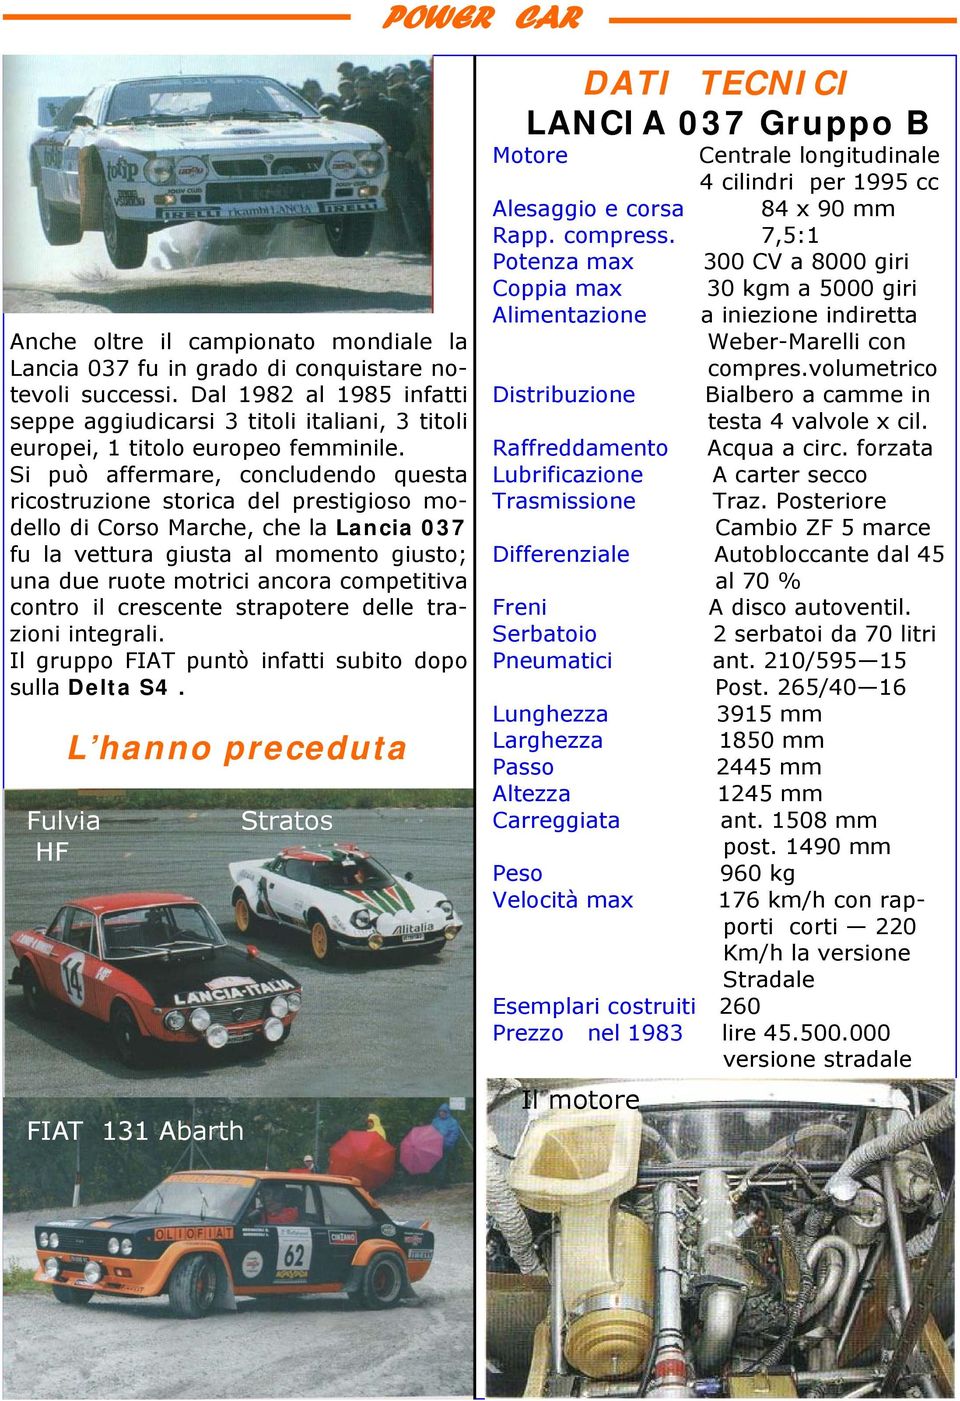 Si può affermare, concludendo questa ricostruzione storica del prestigioso modello di Corso Marche, che la Lancia 037 fu la vettura giusta al momento giusto; una due ruote motrici ancora competitiva